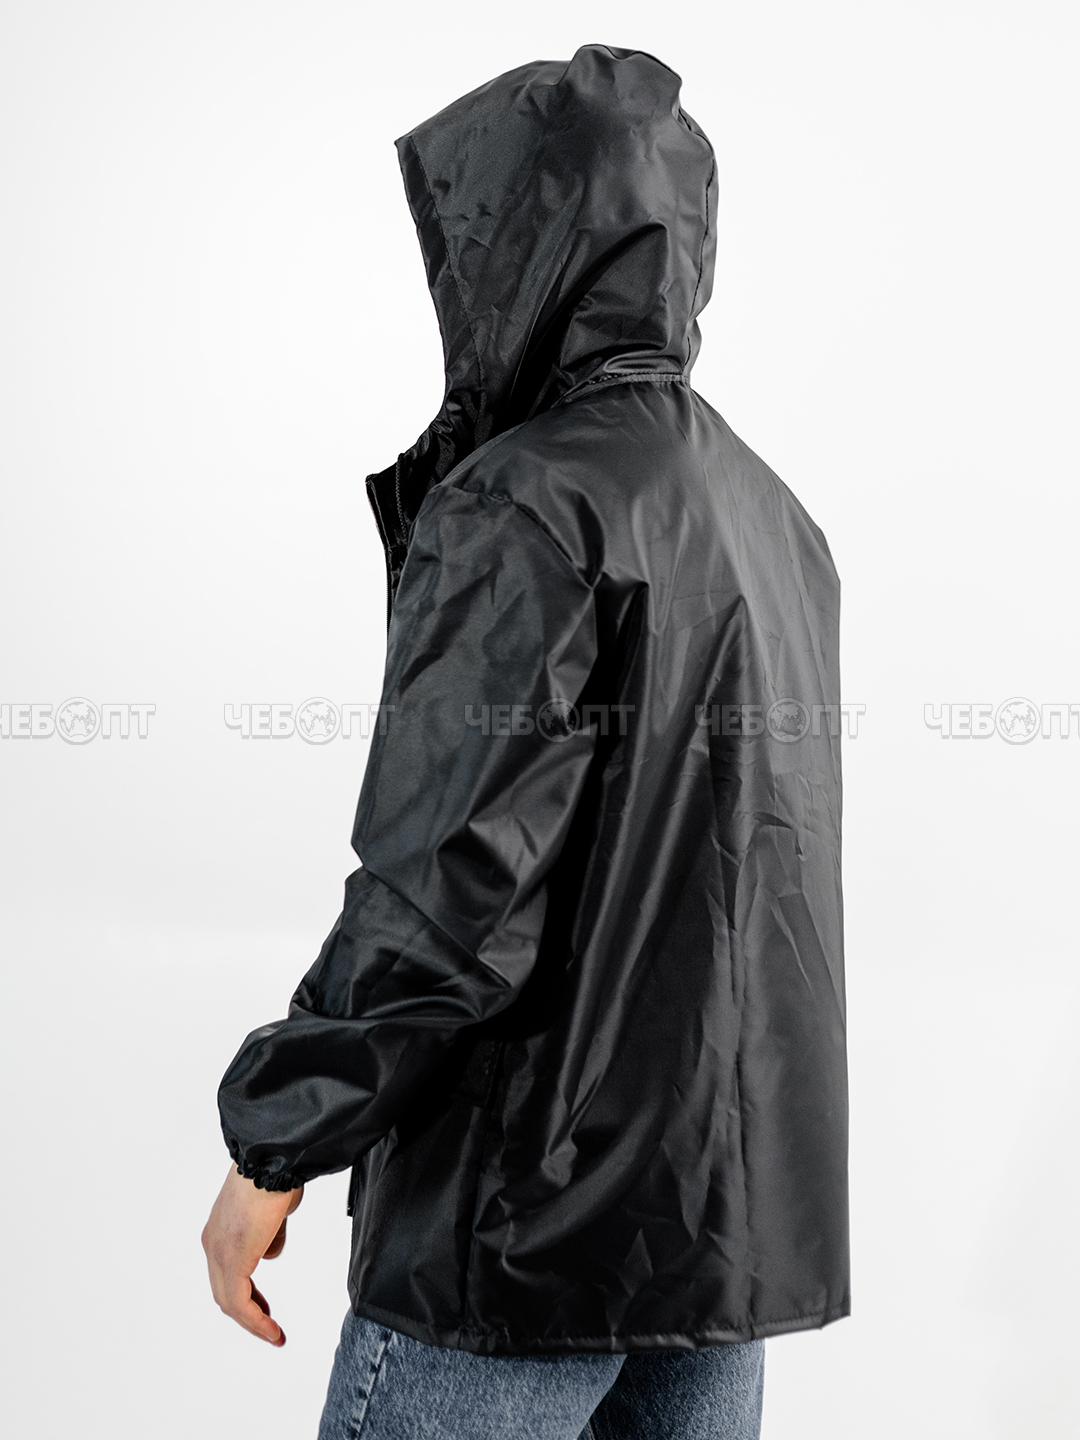 Куртка дождевик мужская, женская ЧЕБПРО,размер 52-54,100% полиэстер, Арт. КуртМуж/черный, МПС [15] СобПр. ЧЕБОПТ.